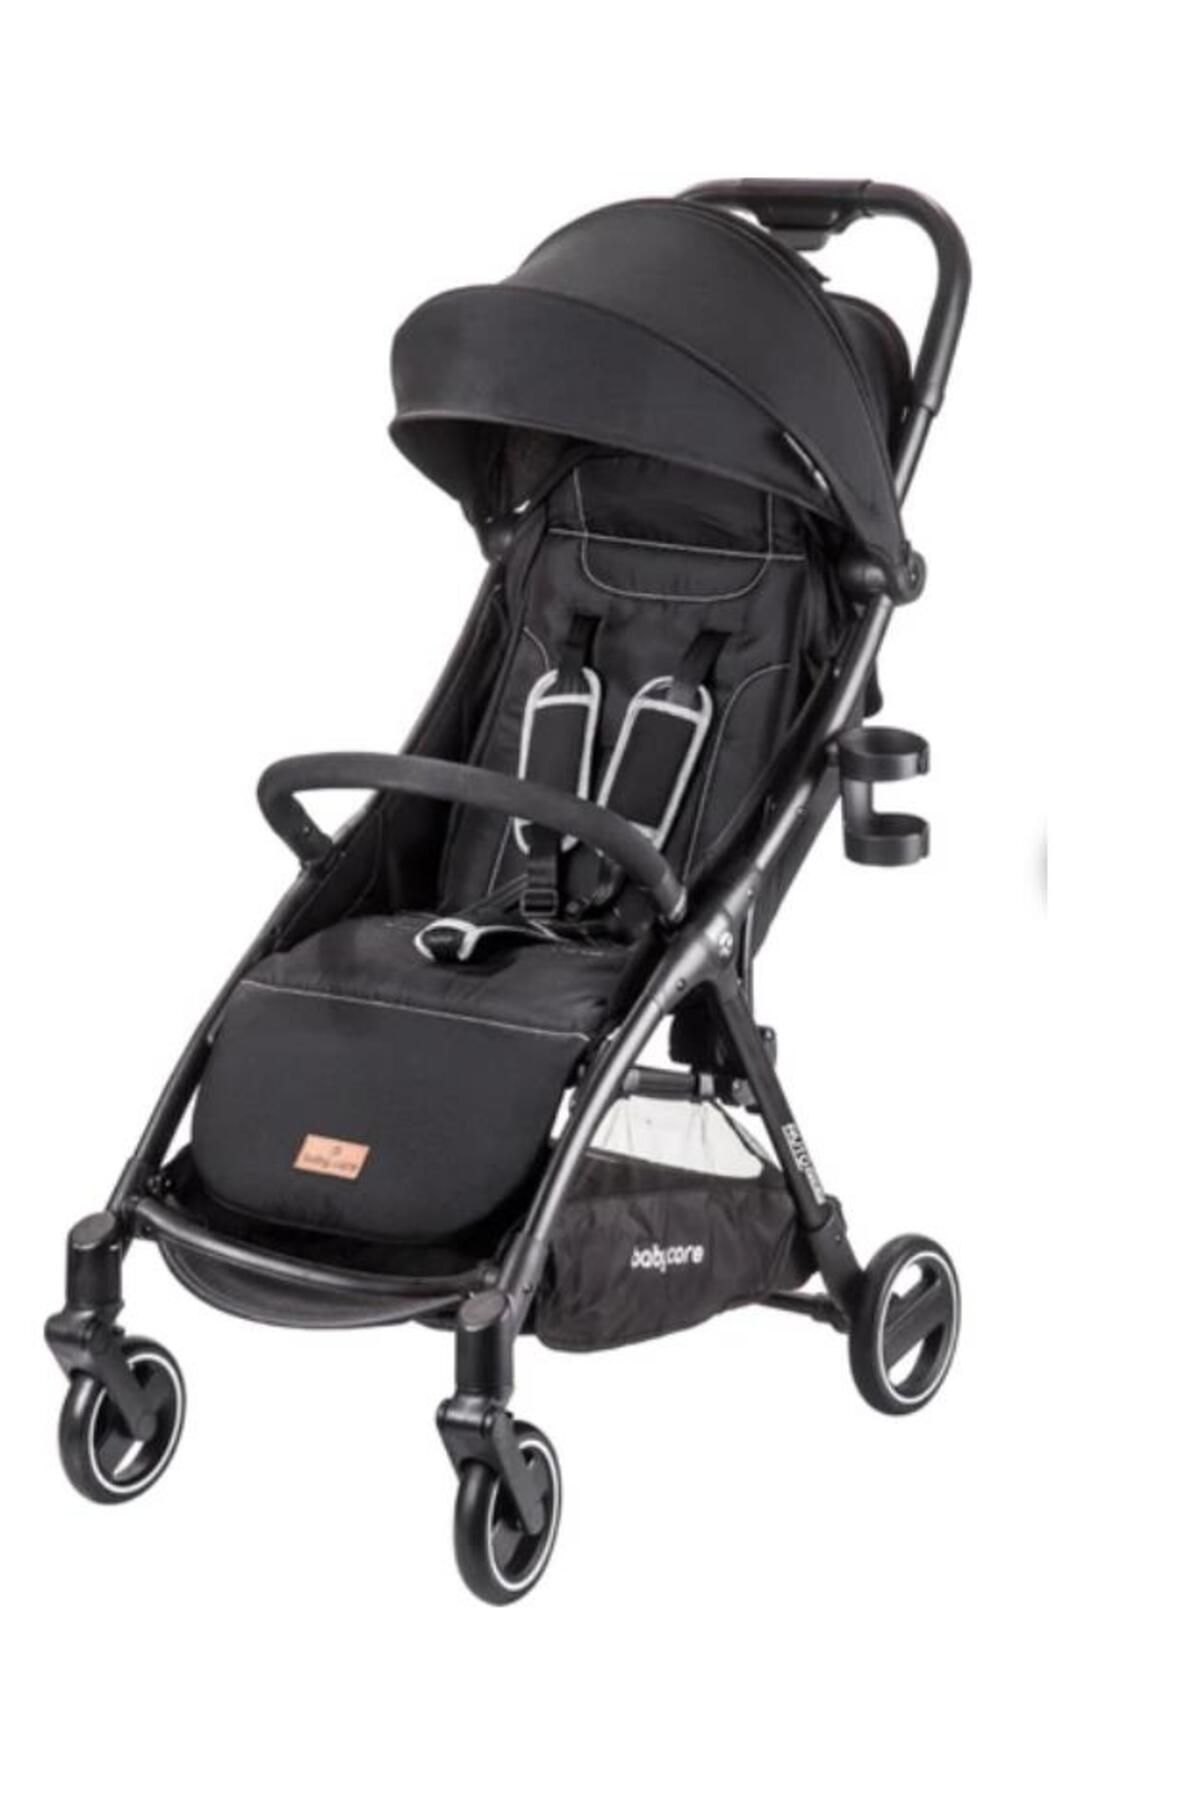 Baby Care Johnson Bc720 Babycare Otomatık Kabın Bebek Arabası Sıyah